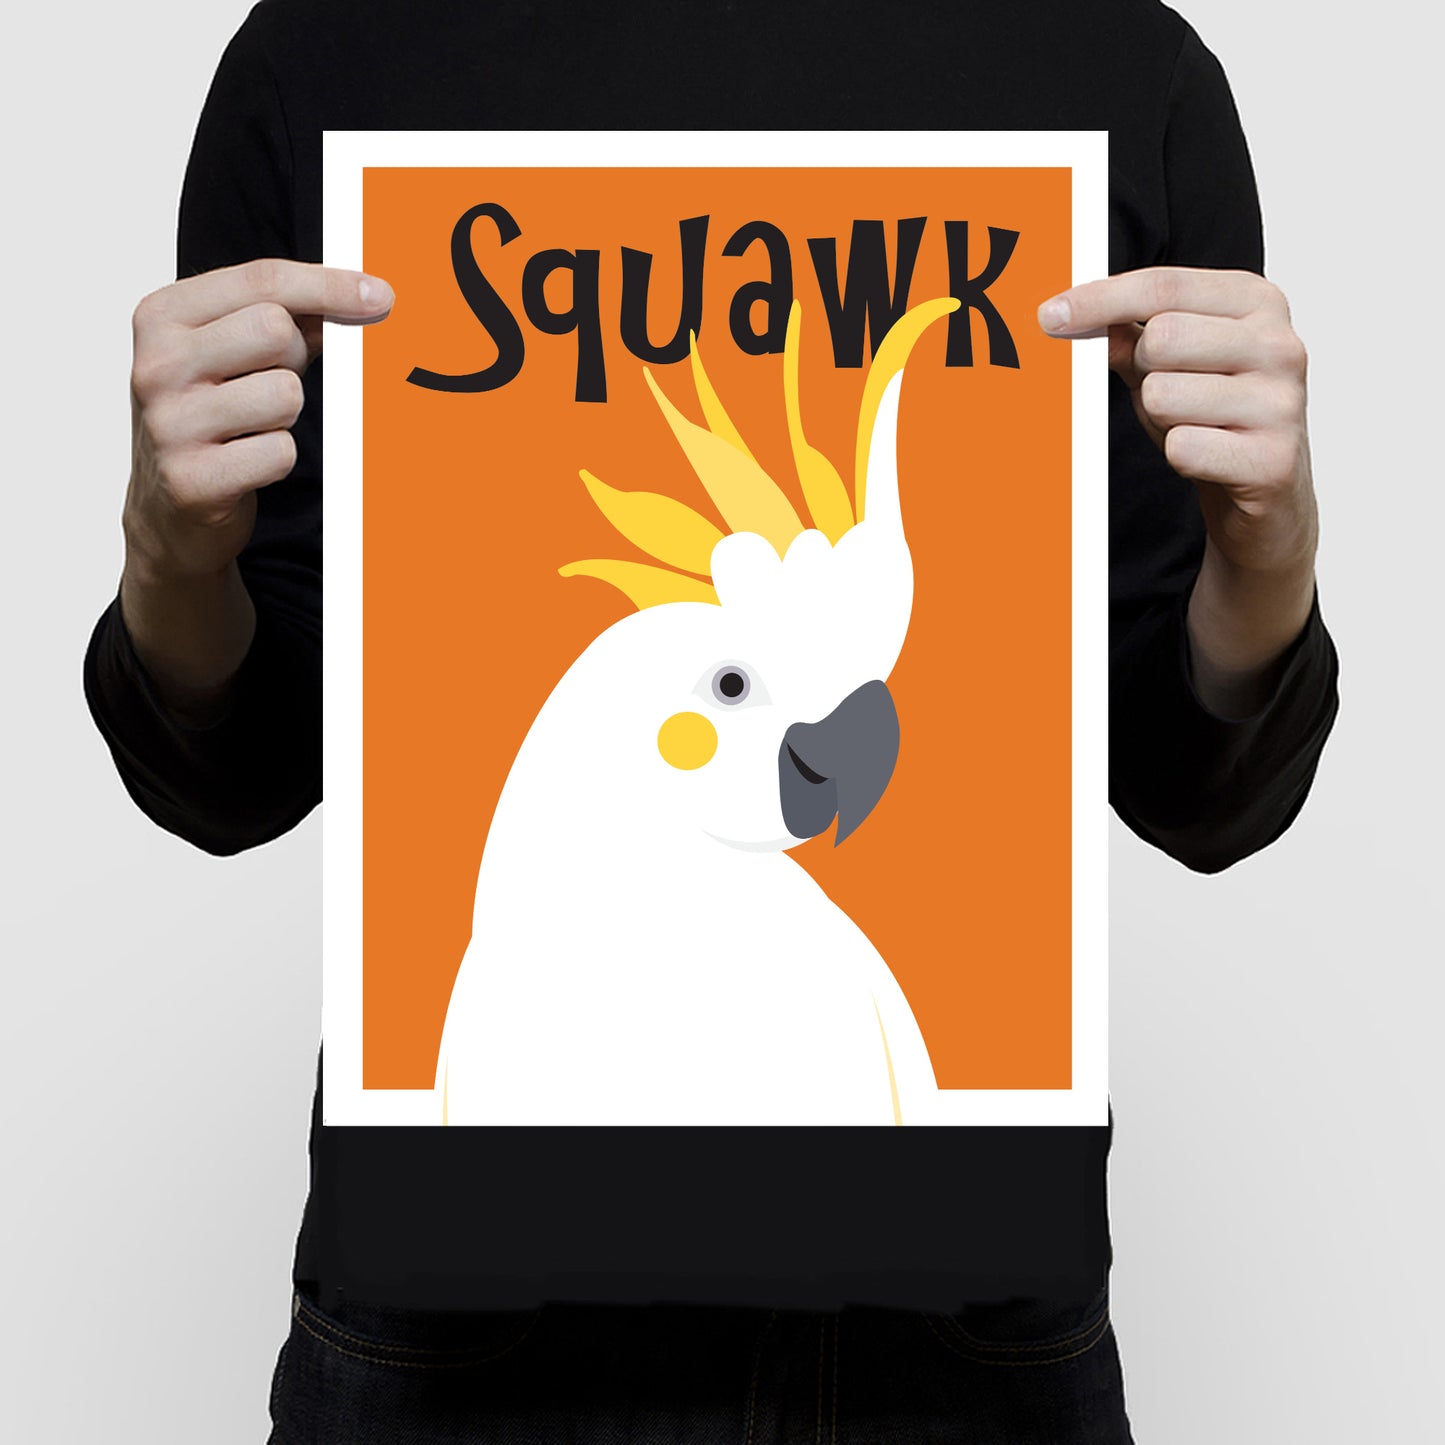 Squawk cockatoo print